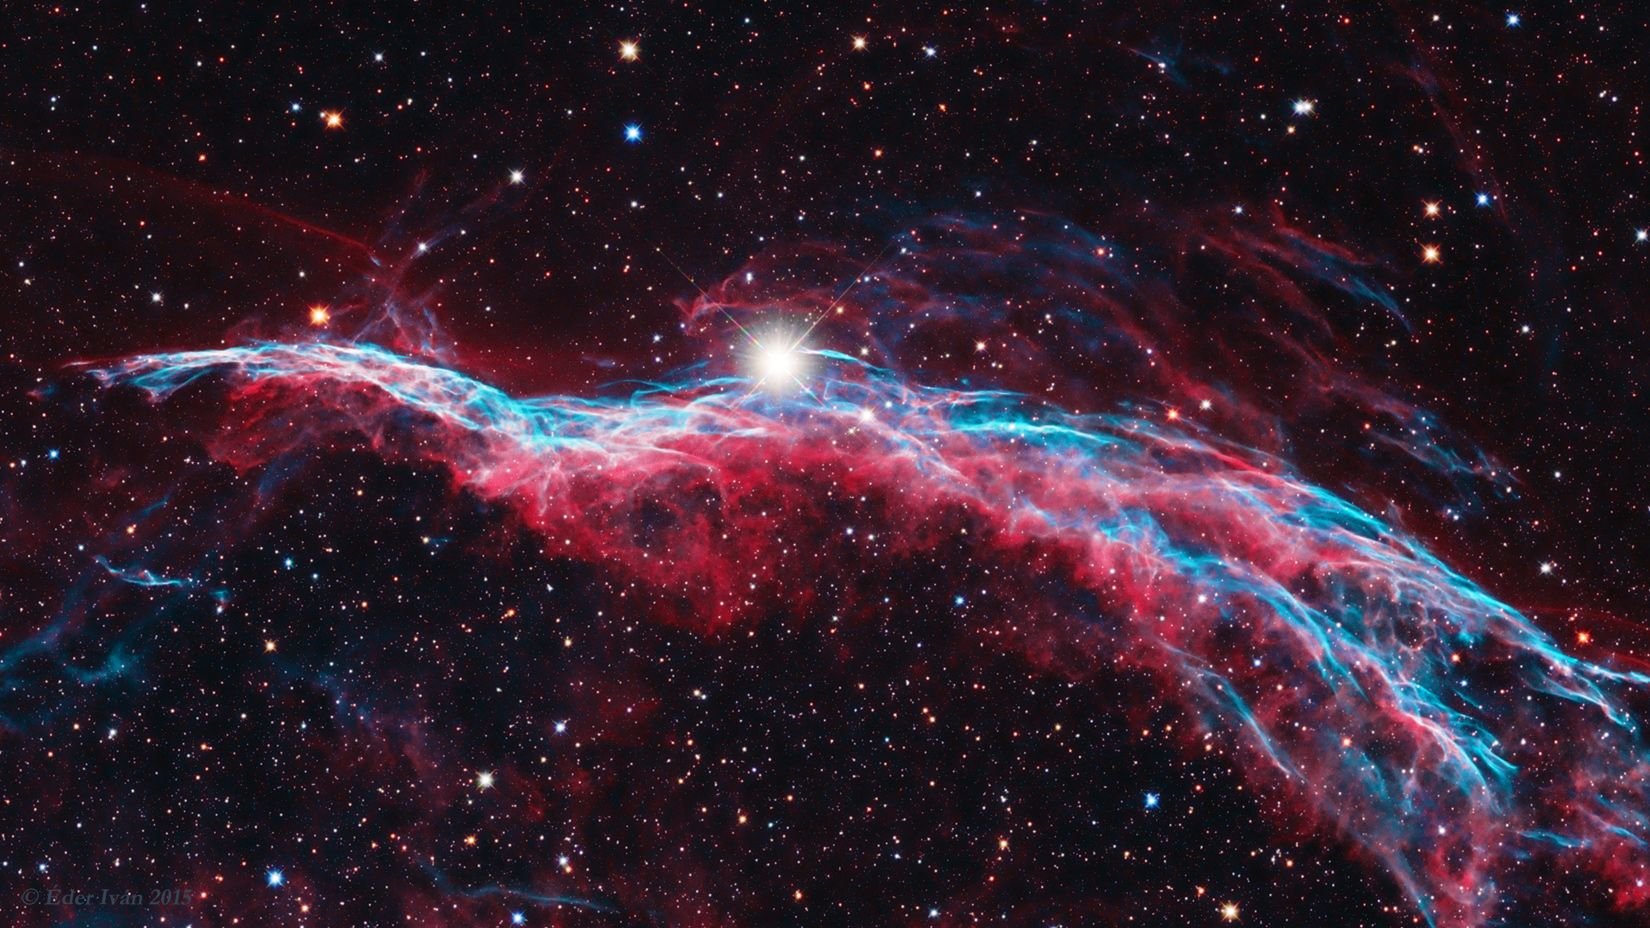 Veil-Nebula (NGC 6960)